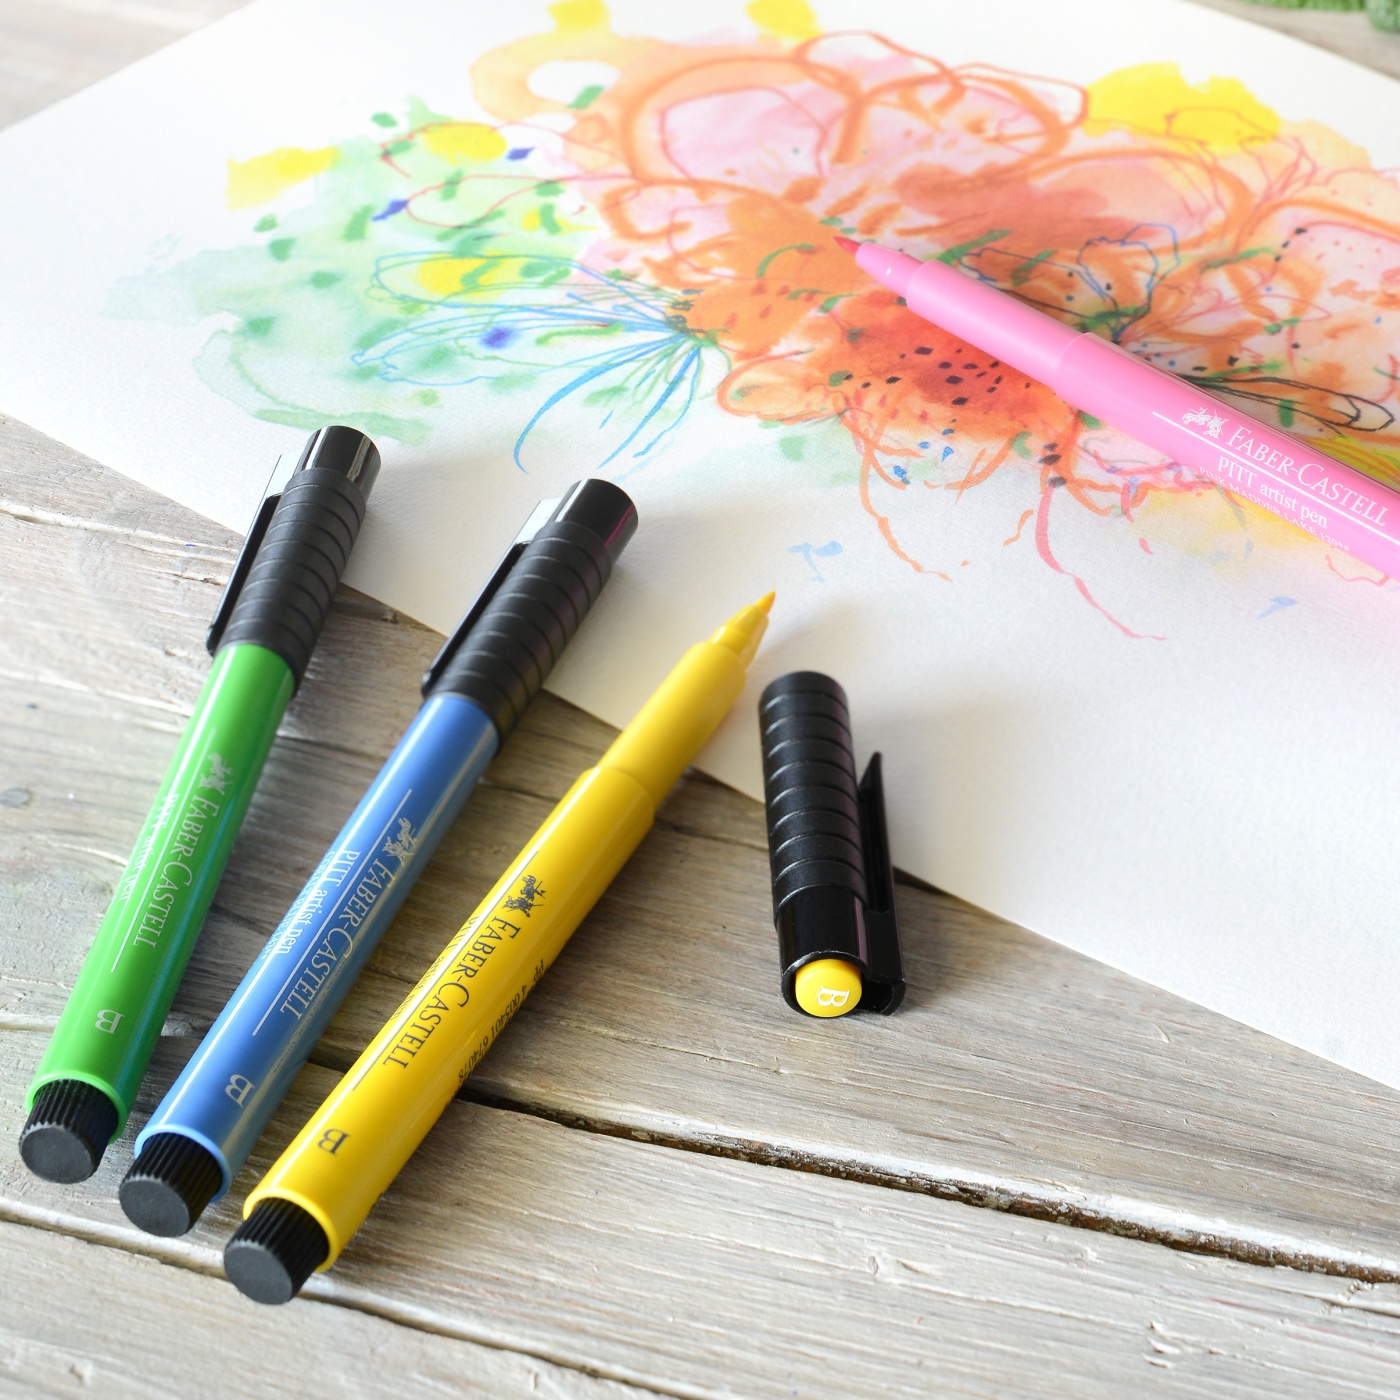 PITT Artist Brush in the group Pens / Artist Pens / Felt Tip Pens at Pen Store (105090_r)